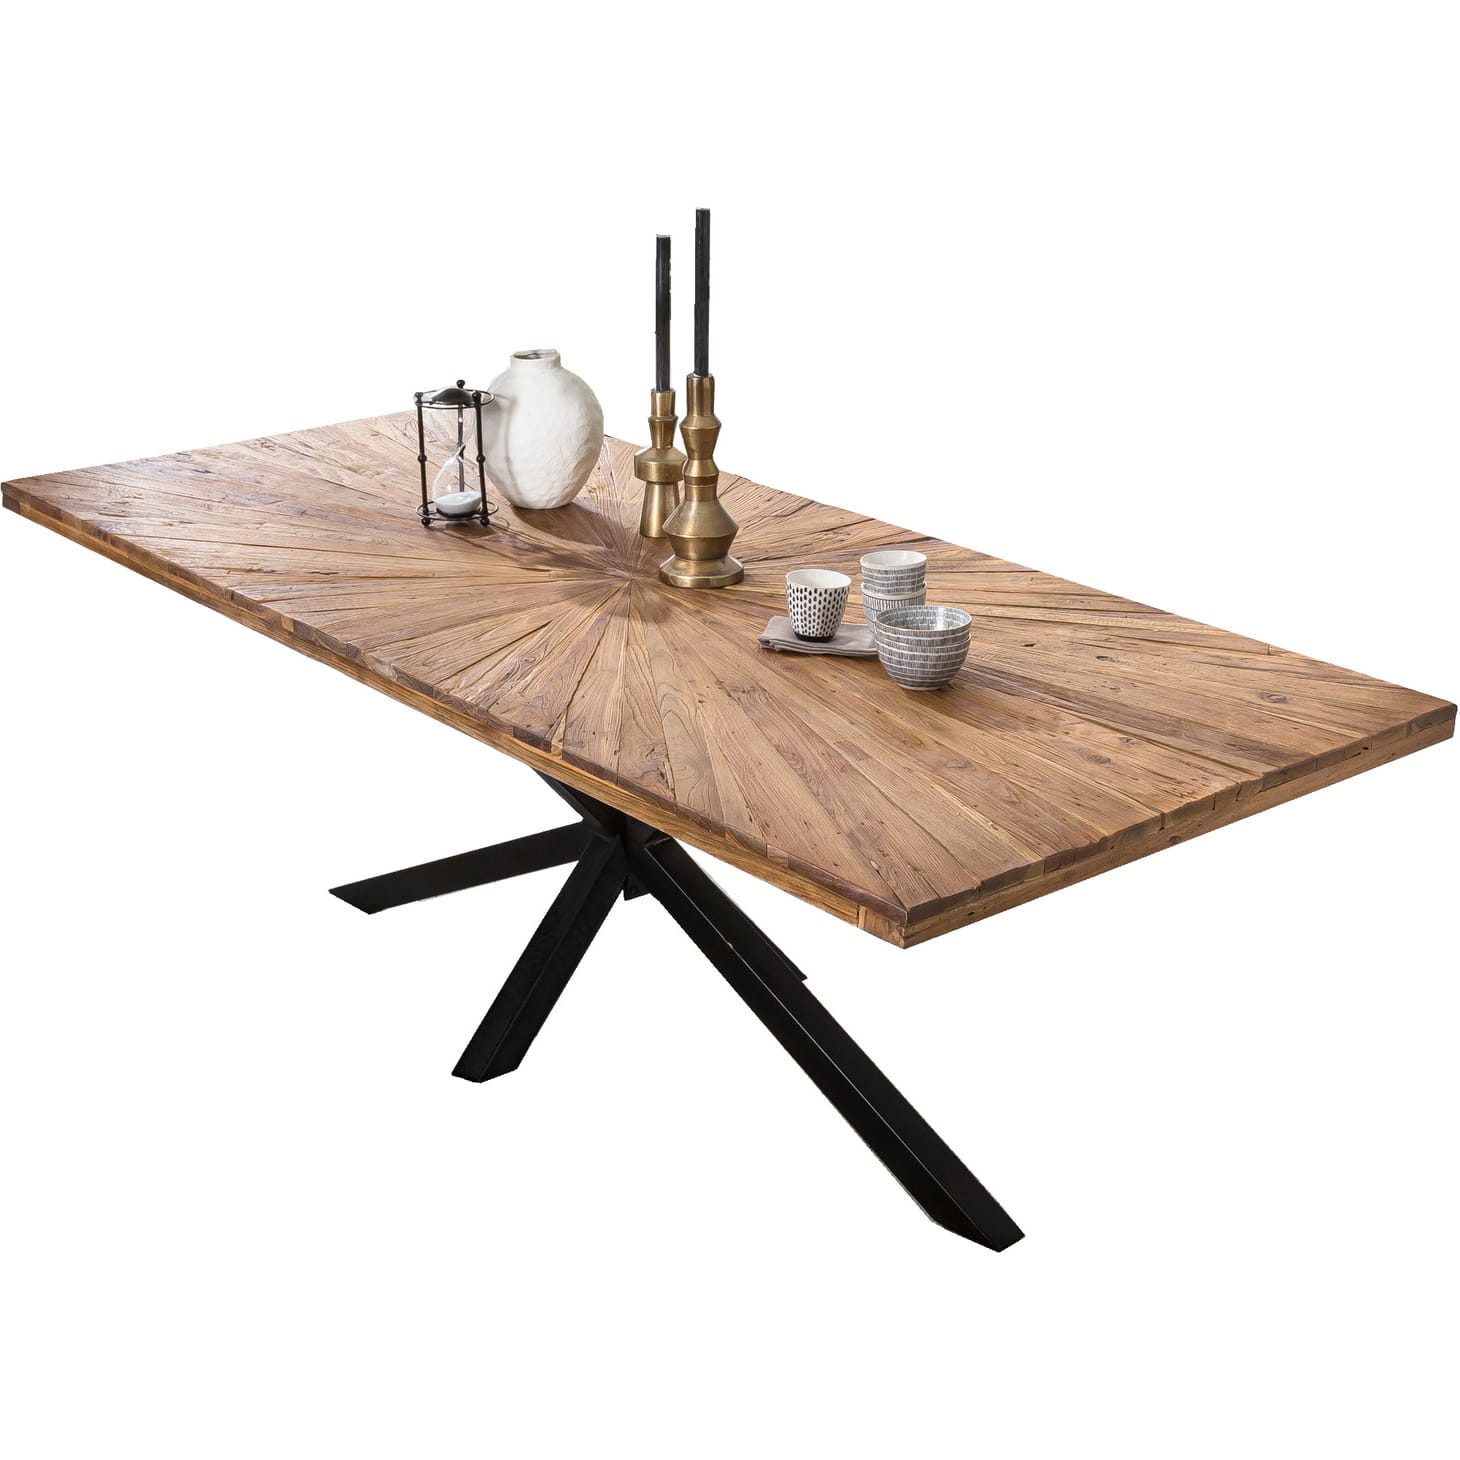 | | | | möbel natur Esstische Tischplatten recyceltes Unique mutoni | Möbel Massivholztisch | Tischsystem 240x100 Tische | Metall Tischsystem modular Teak Gestellen - mit - antikschwarz